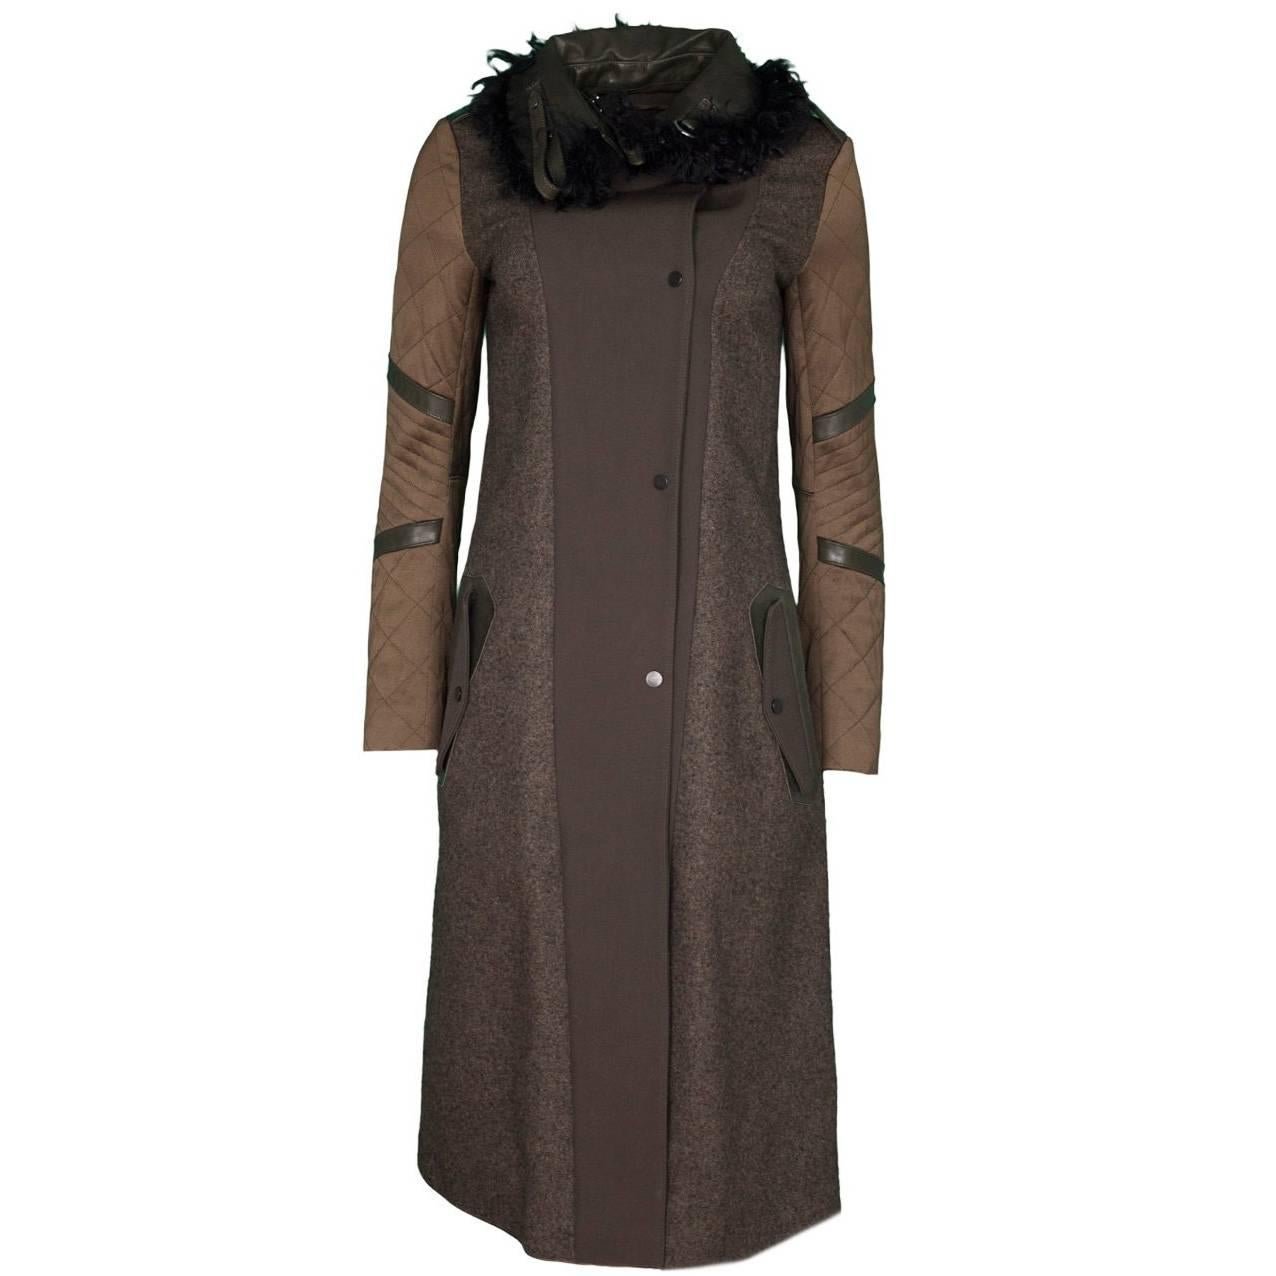 Belstaff Wool Coat & Curly Lamb Fur Coat Sz IT38